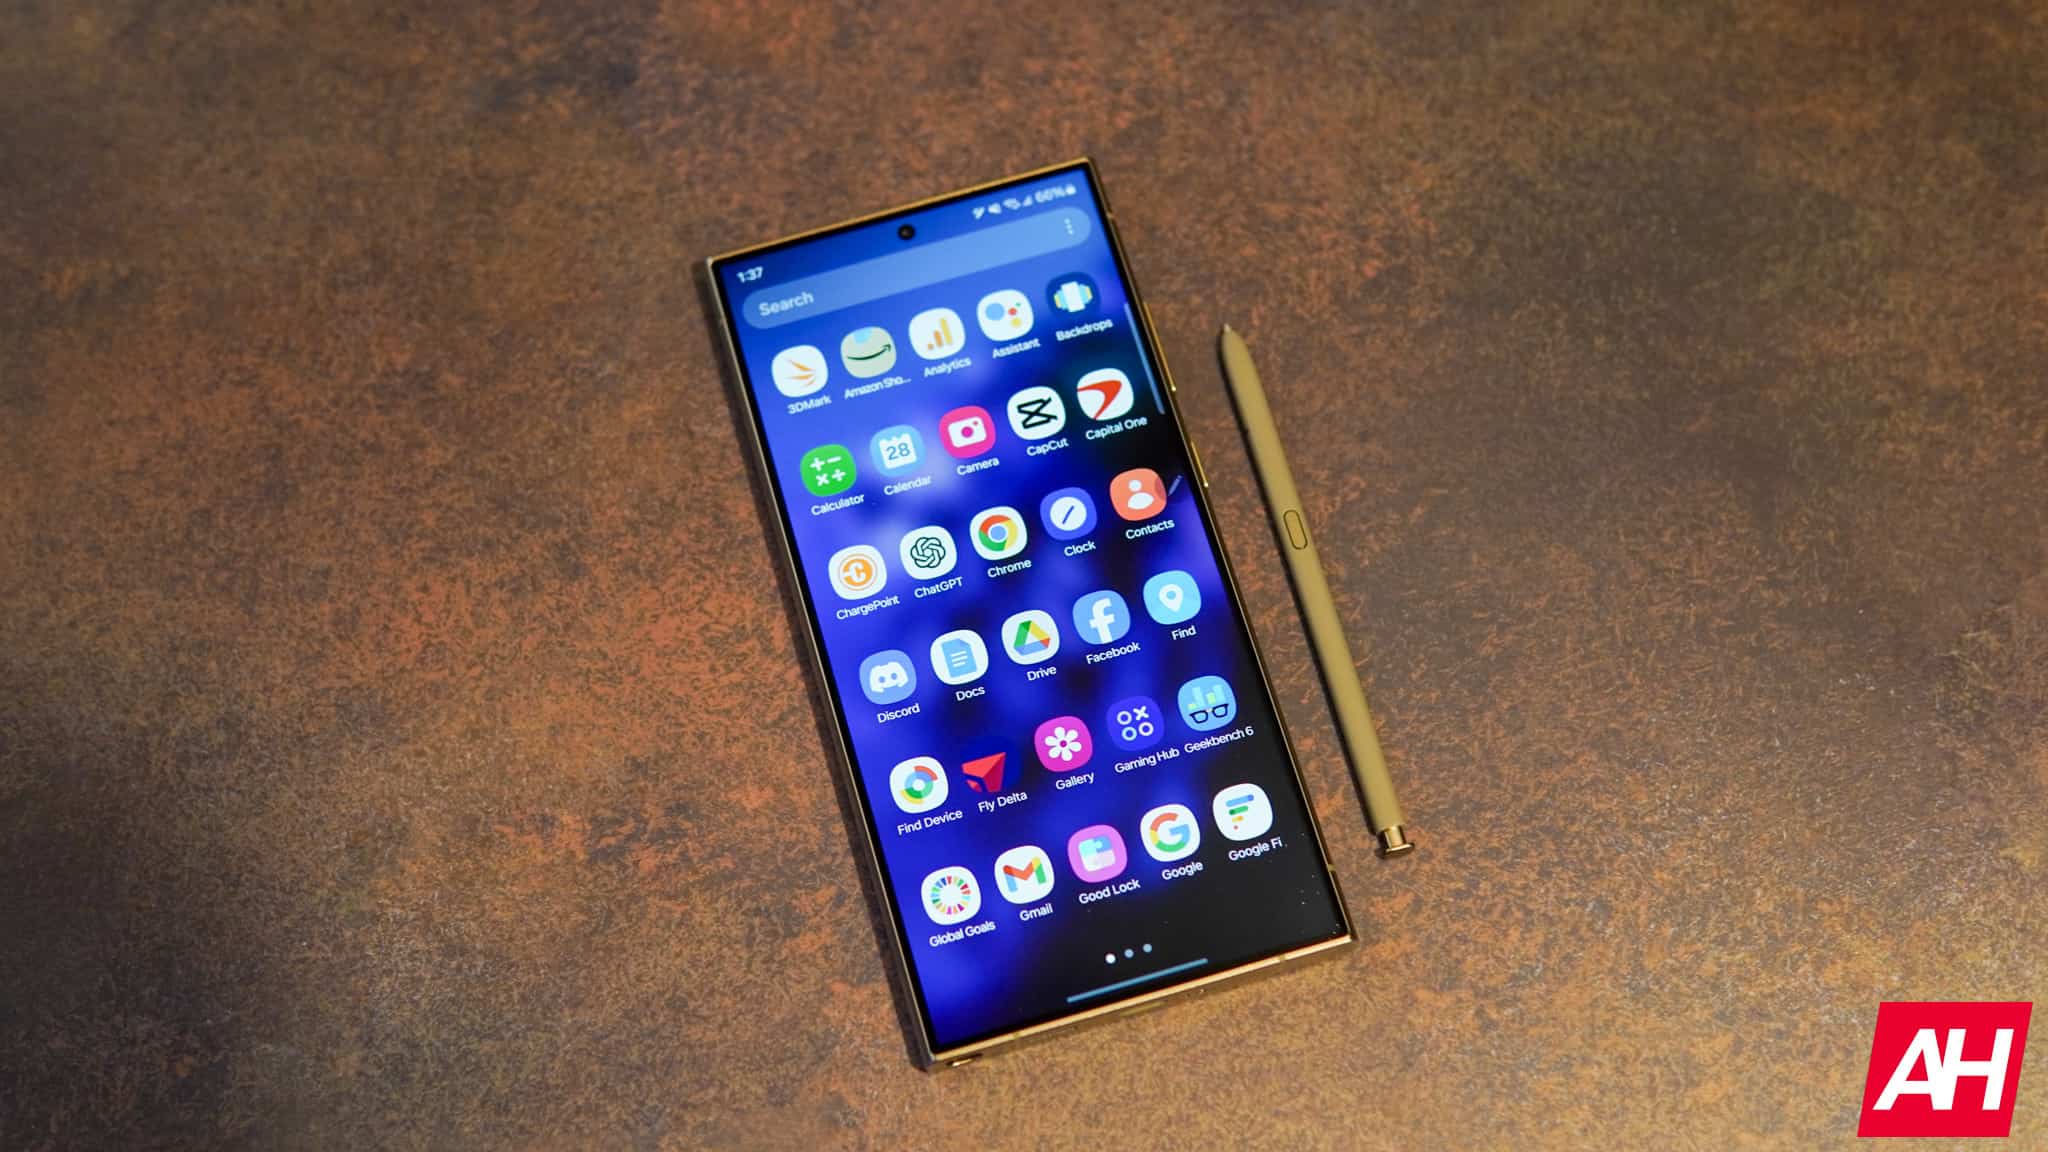 Cajón de aplicaciones vertical para dispositivos Samsung Galaxy confirmado nuevamente